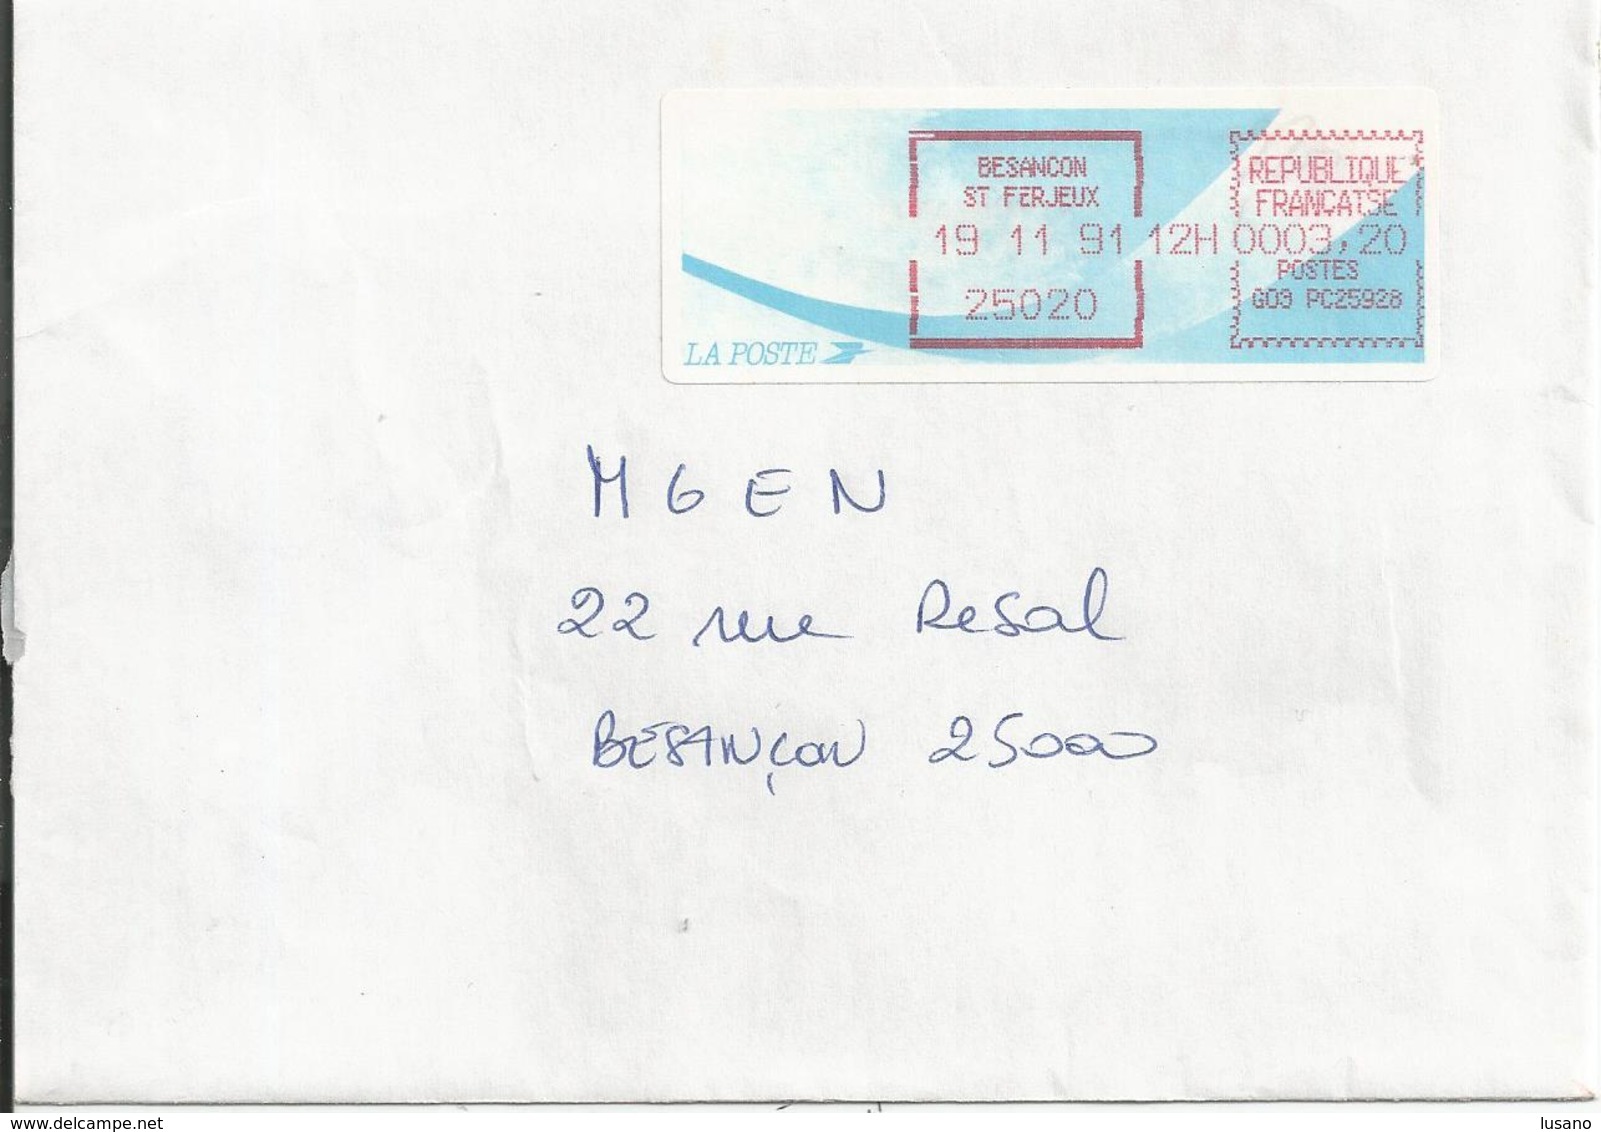 Vignette D'affranchissement Type "Comète" Sur Enveloppe - Bureau De Besançon Saint-Ferjeux (Doubs) - 1988 « Comète »